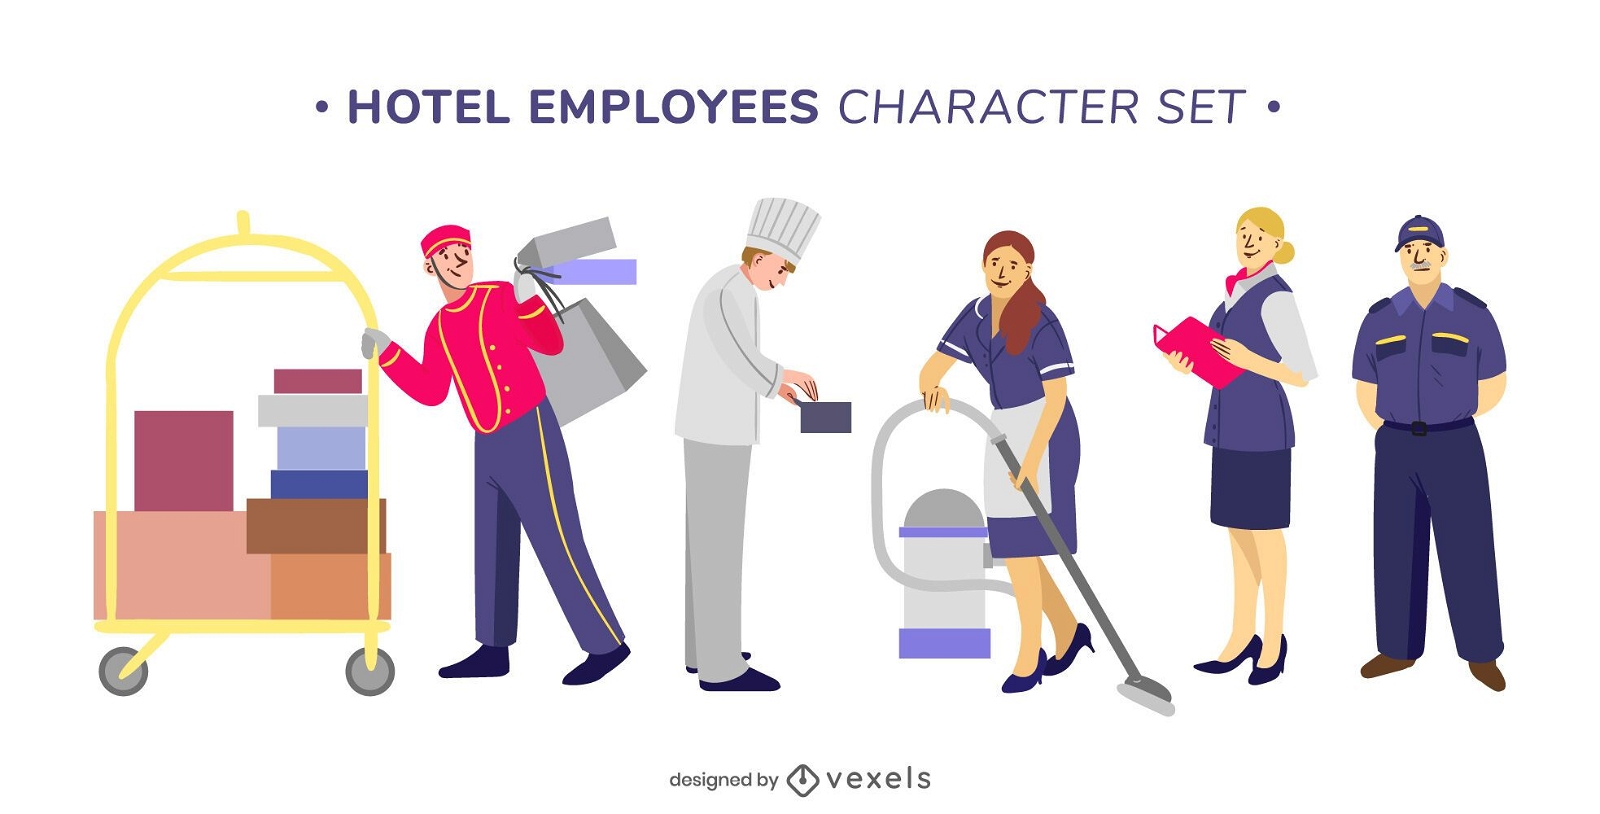 Zeichensatz der Hotelangestellten